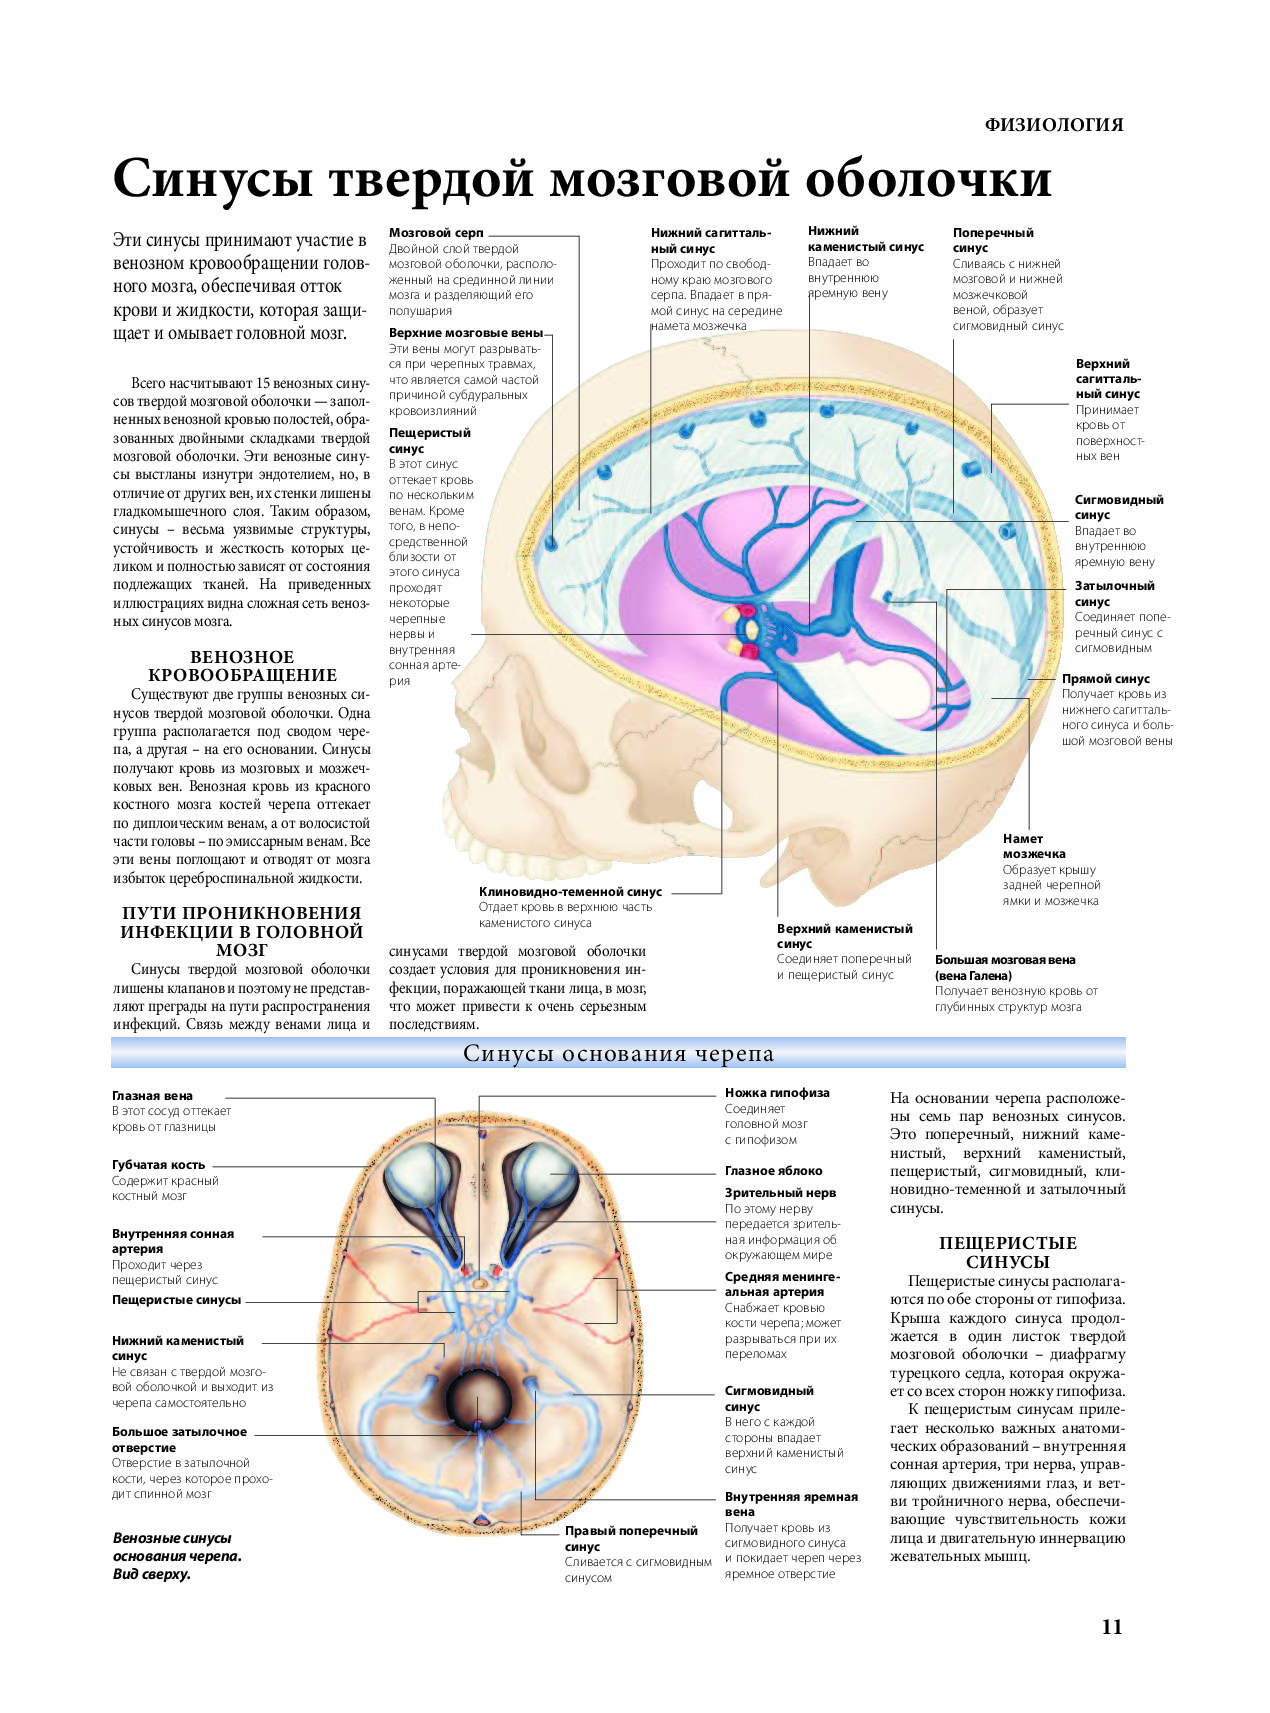 Синусы оболочки головного мозга. Синусы твердой мозговой оболочки топографическая анатомия. Вены синусы твердой мозговой оболочки. Топография синусов твердой мозговой оболочки. Венозные синусы головного мозга анатомия.